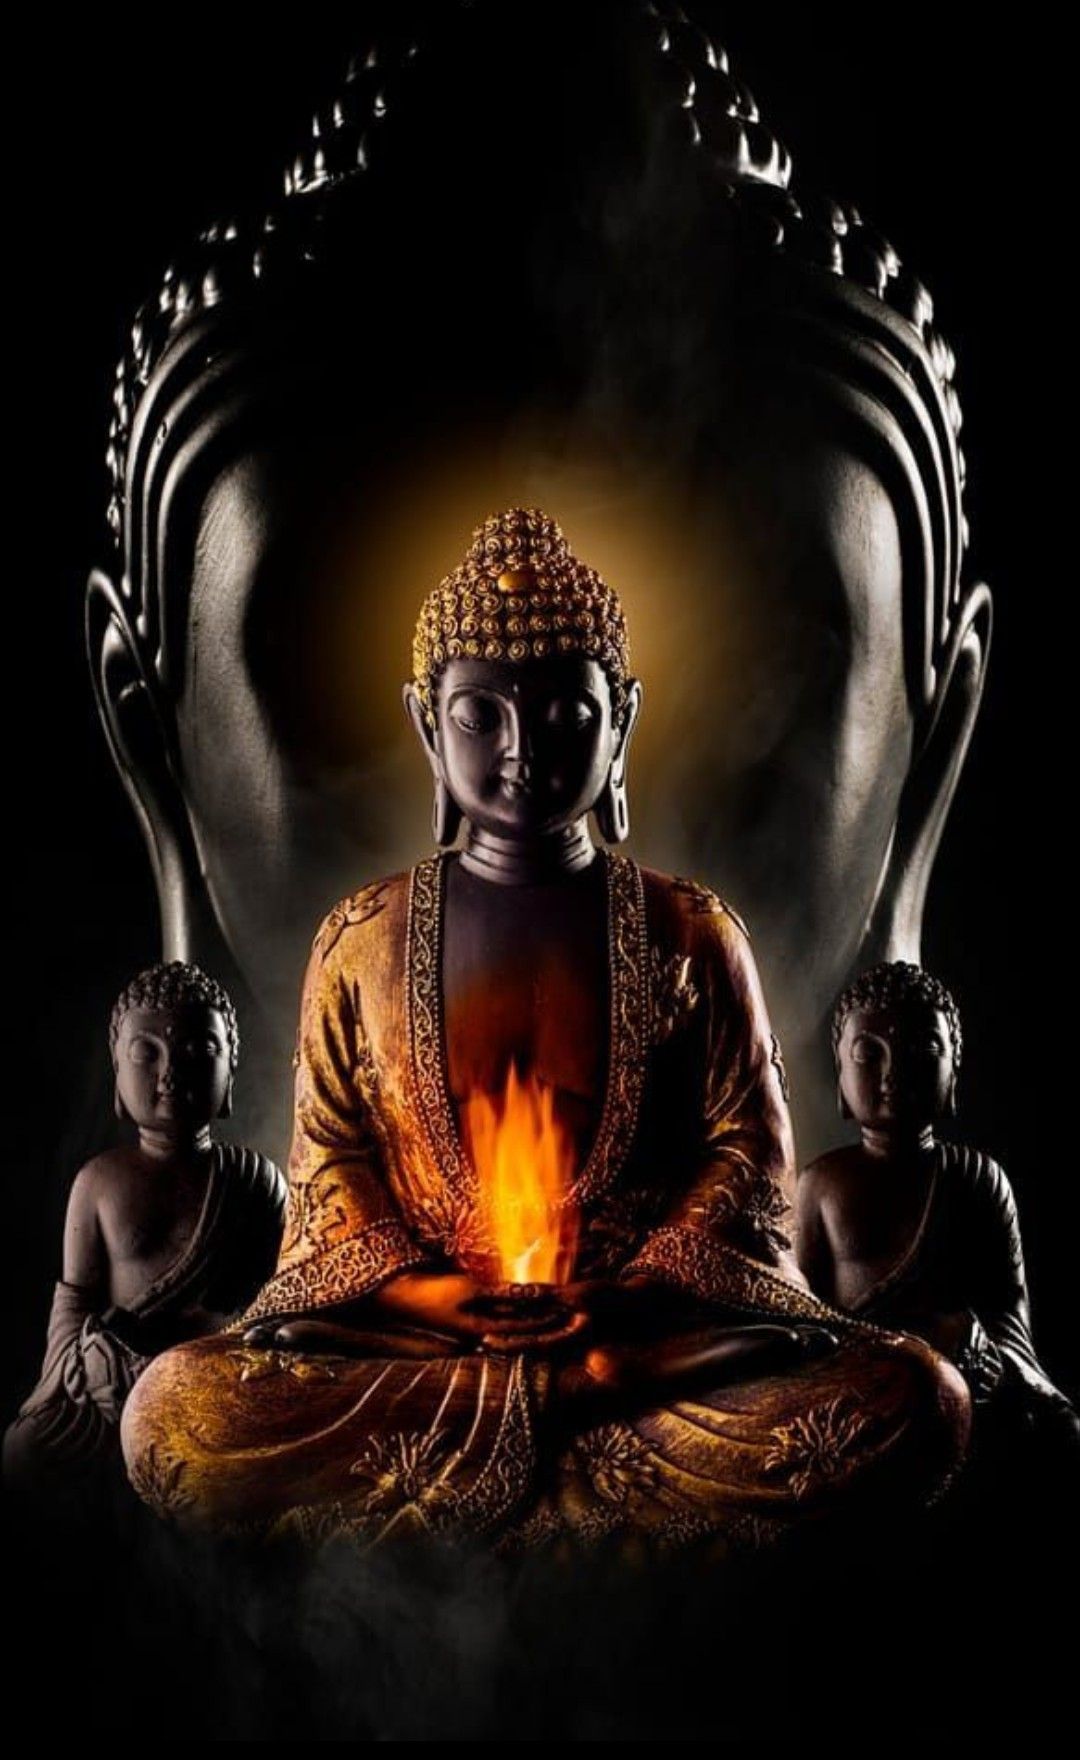 Để ảnh Đức Phật làm hình nền điện thoại có được không? | Để ảnh Đức Phật  làm hình nền điện thoại có được không? — Đức Phật là bậc tối tôn